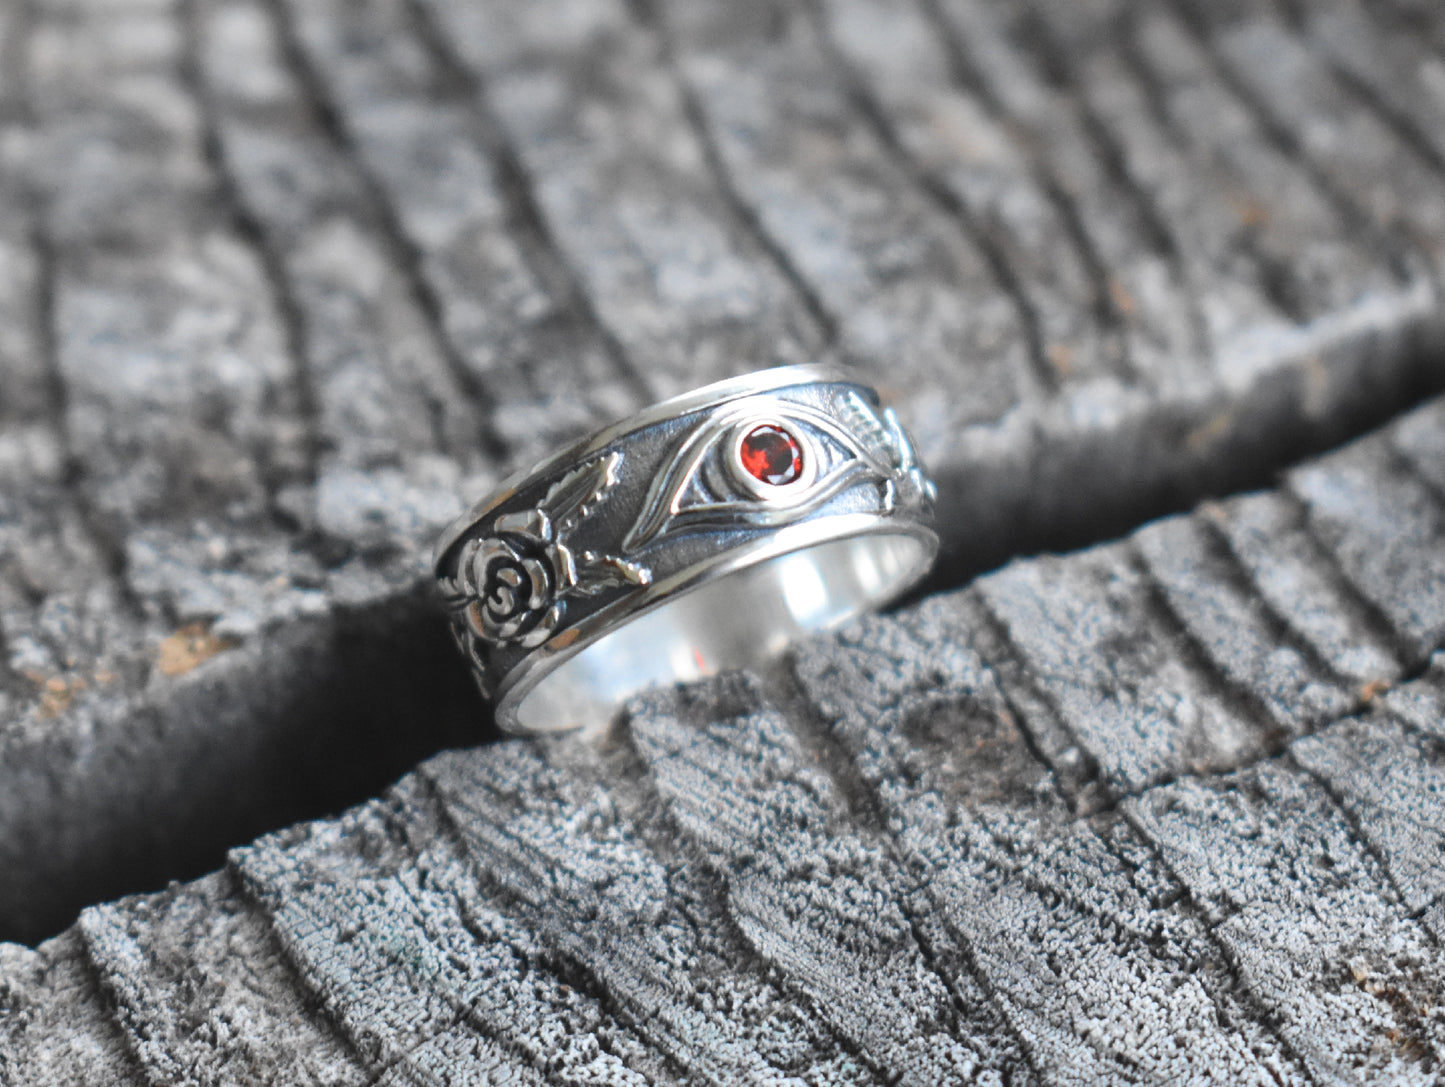 Garnet & Roses Evil Eye Ring-Sterling Silver